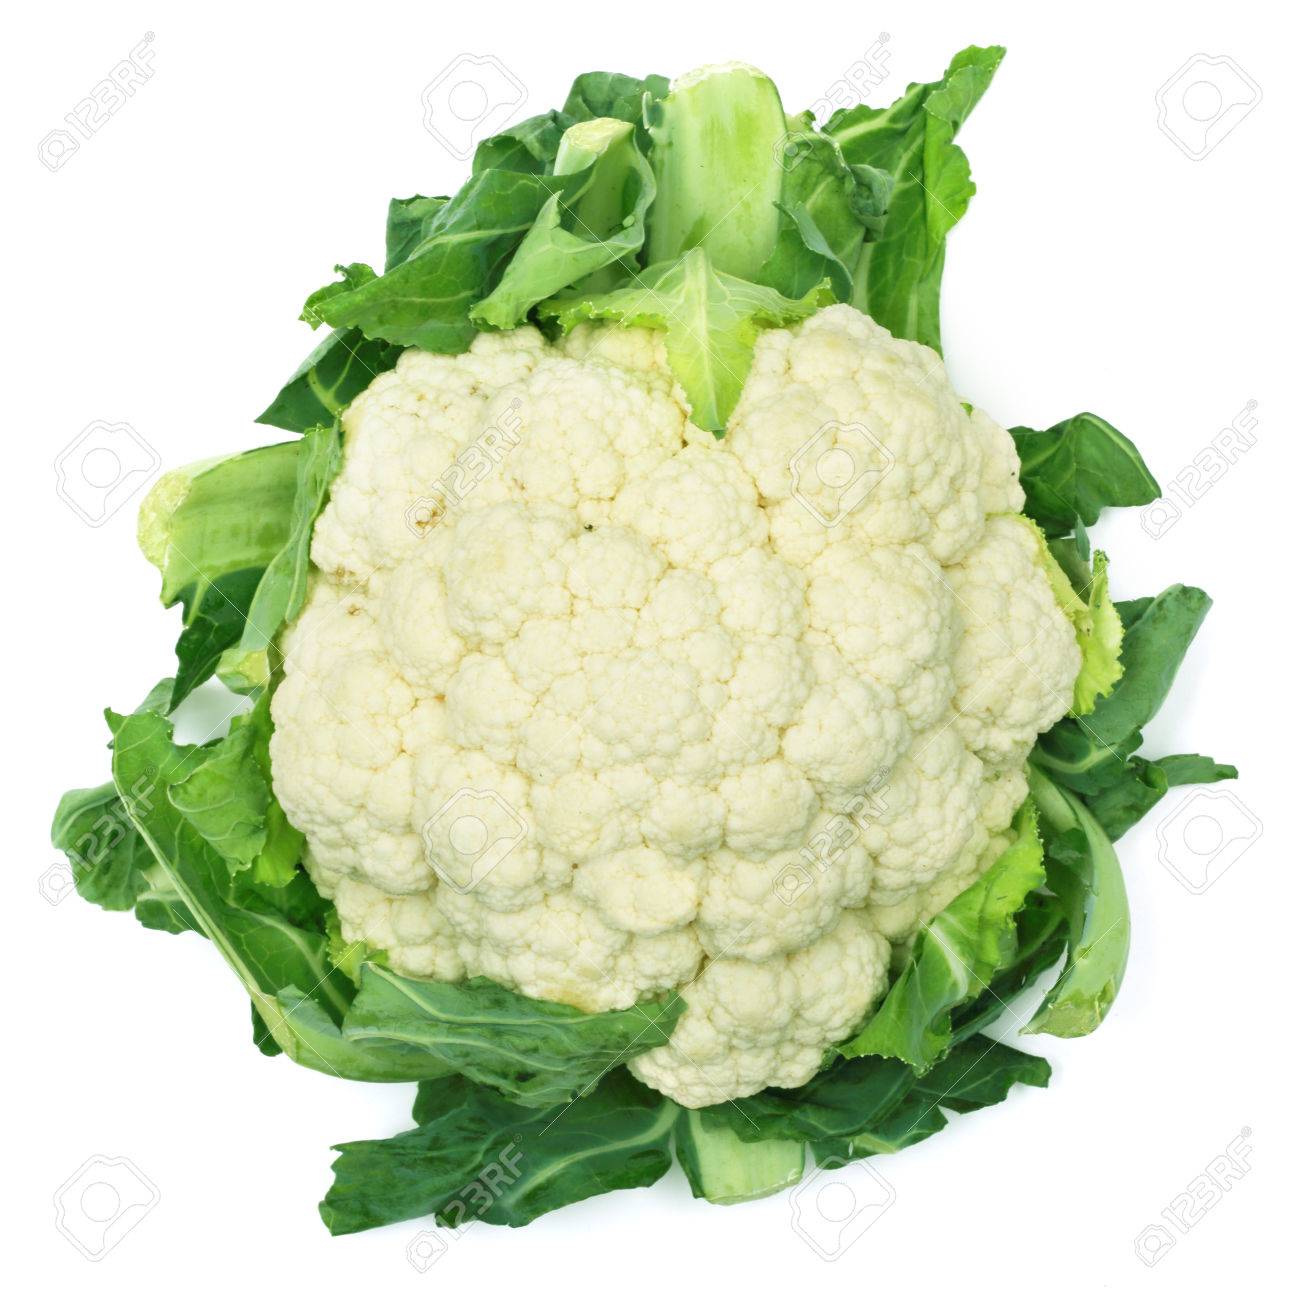 One Fresh Cauliflower Isolated On White Background Stock Photo